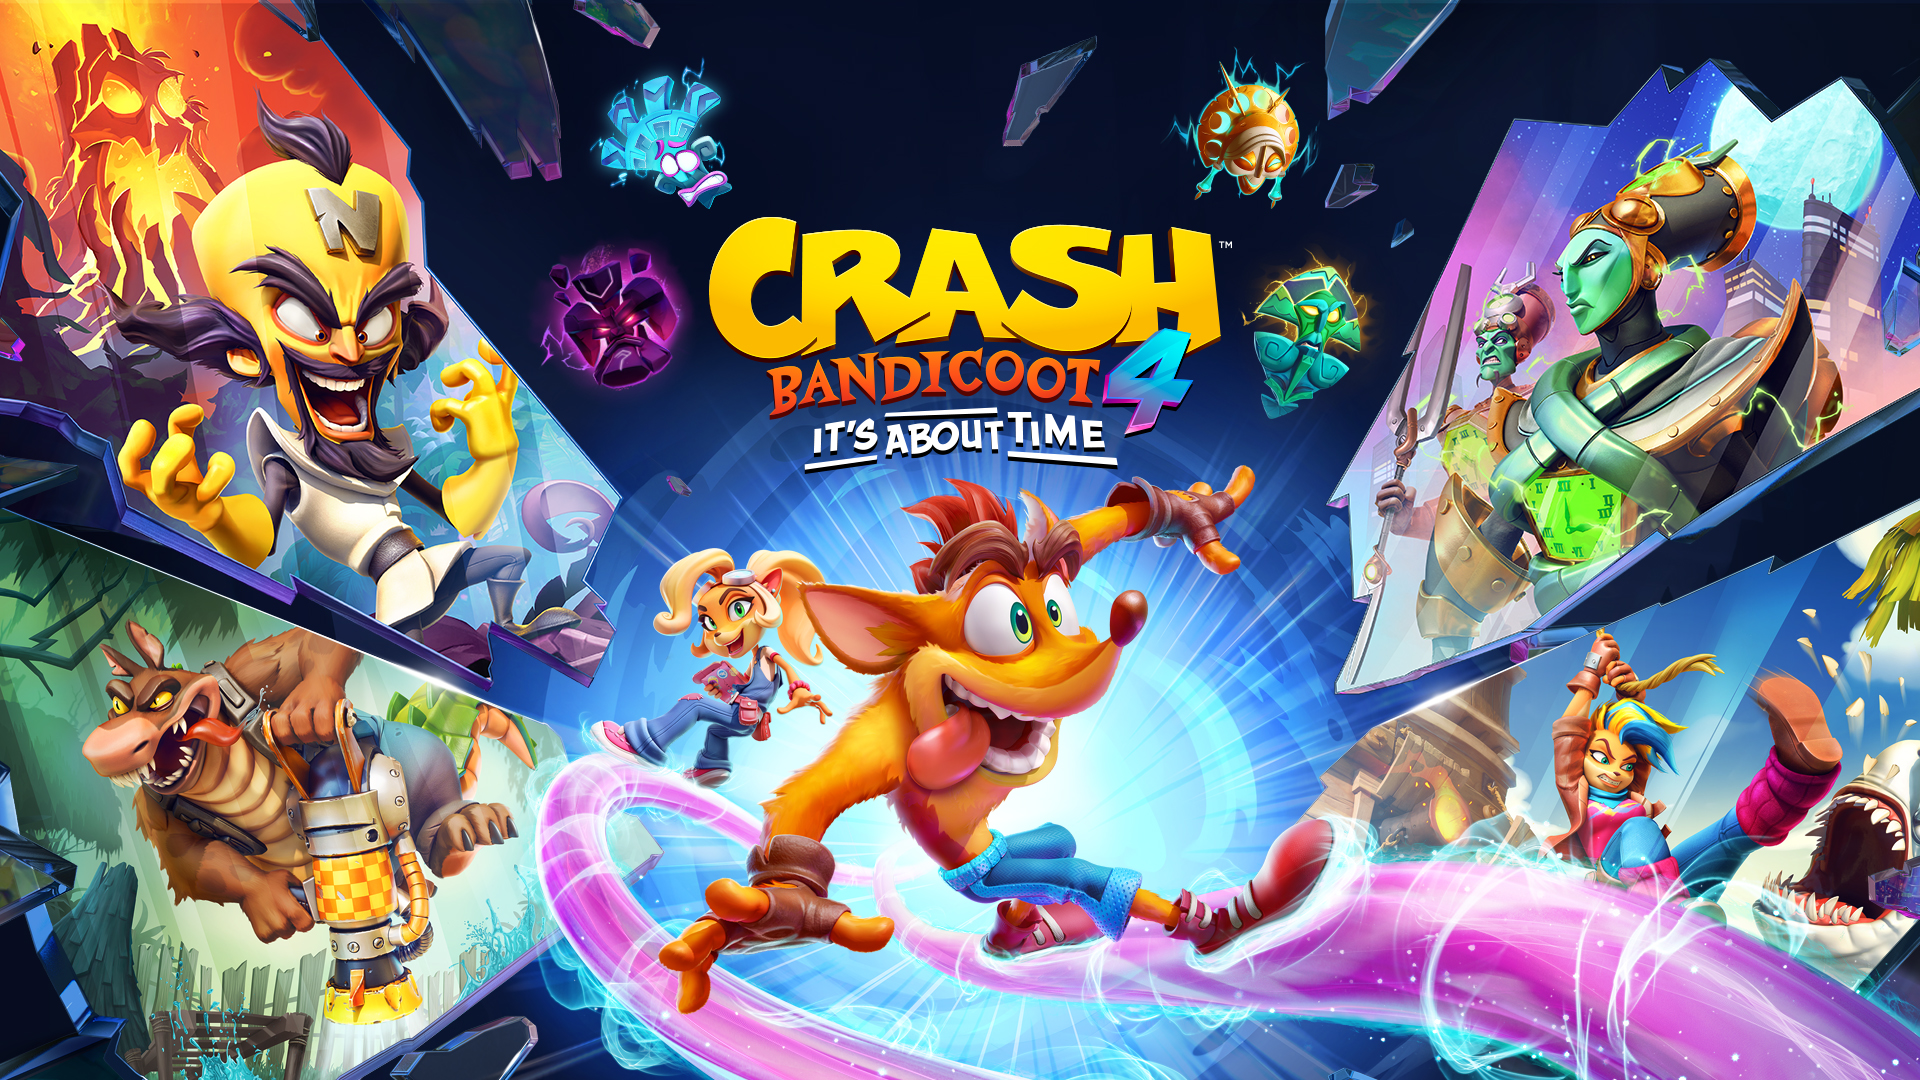 خرید بازی Crash Bandicoot 4 برای ایکس باکس